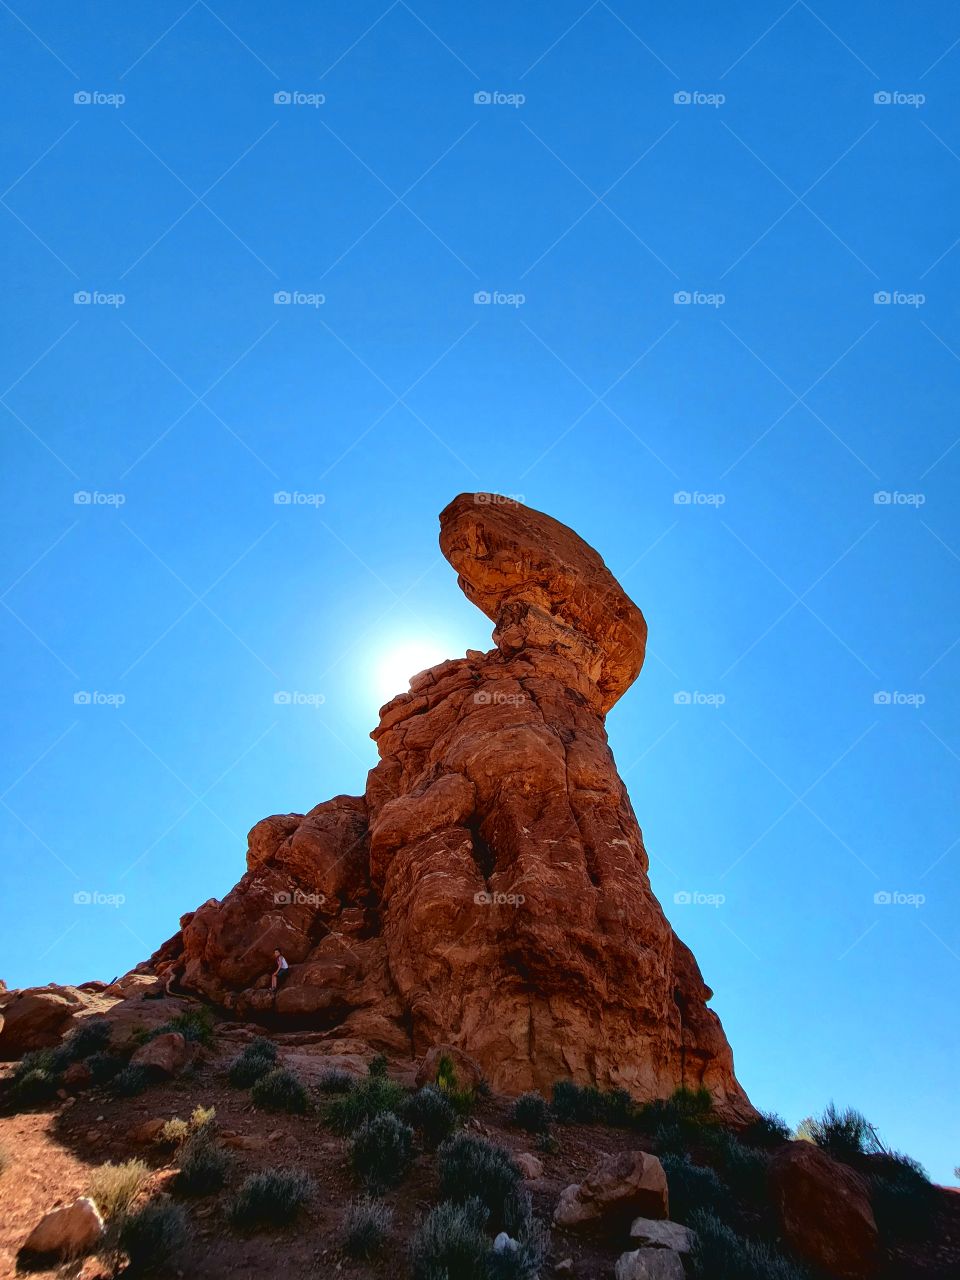 Balance Rock over sun